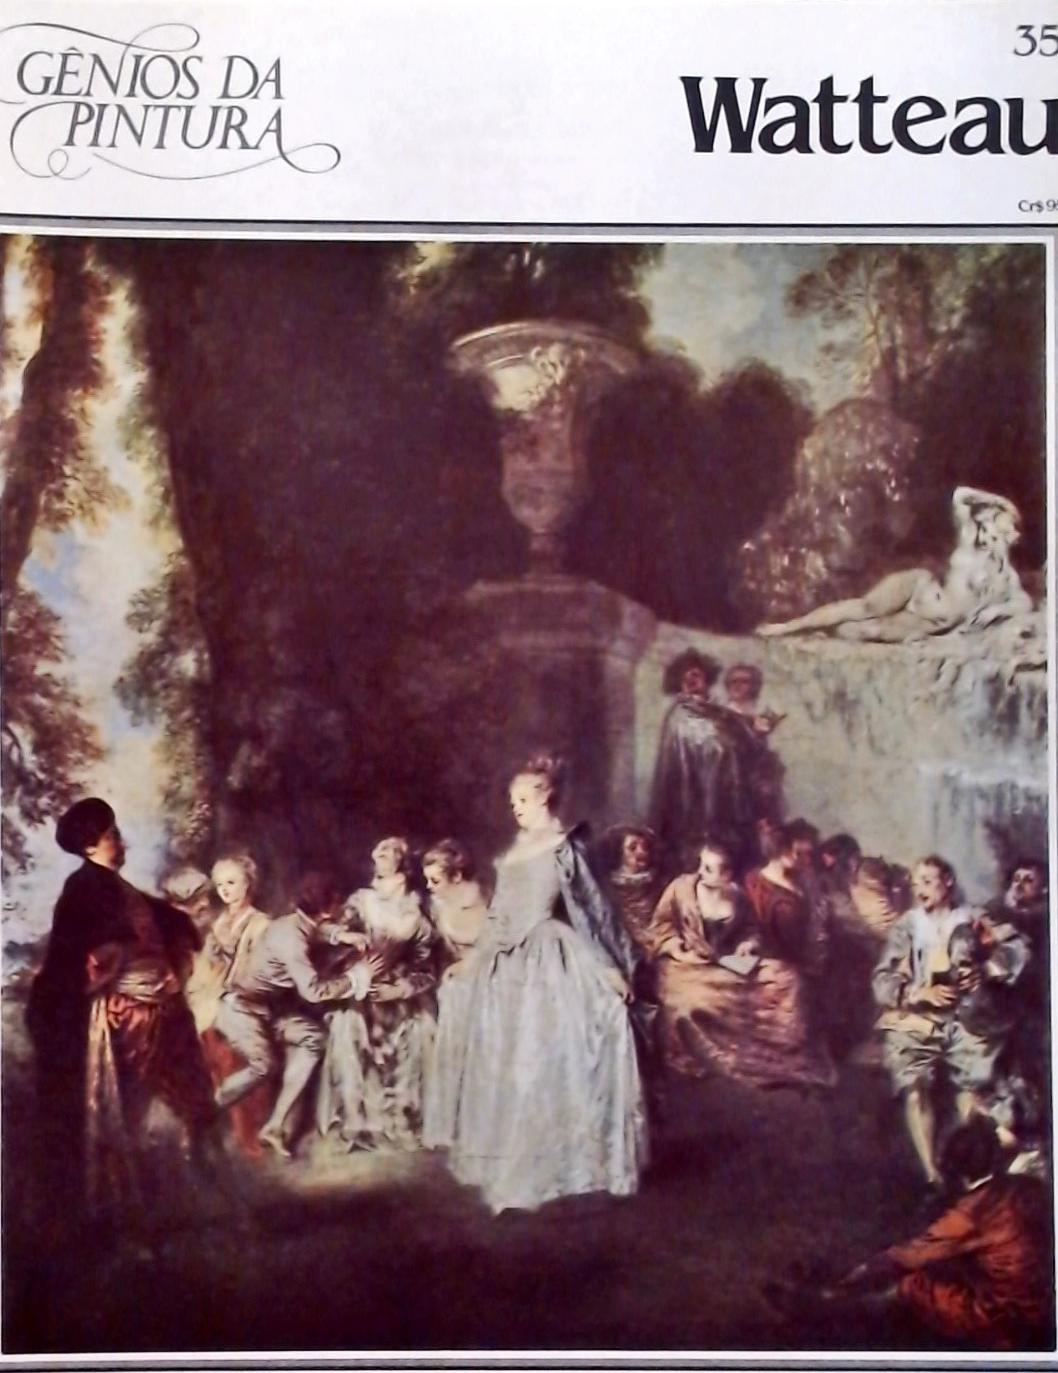 Gênios da Pintura - Watteau